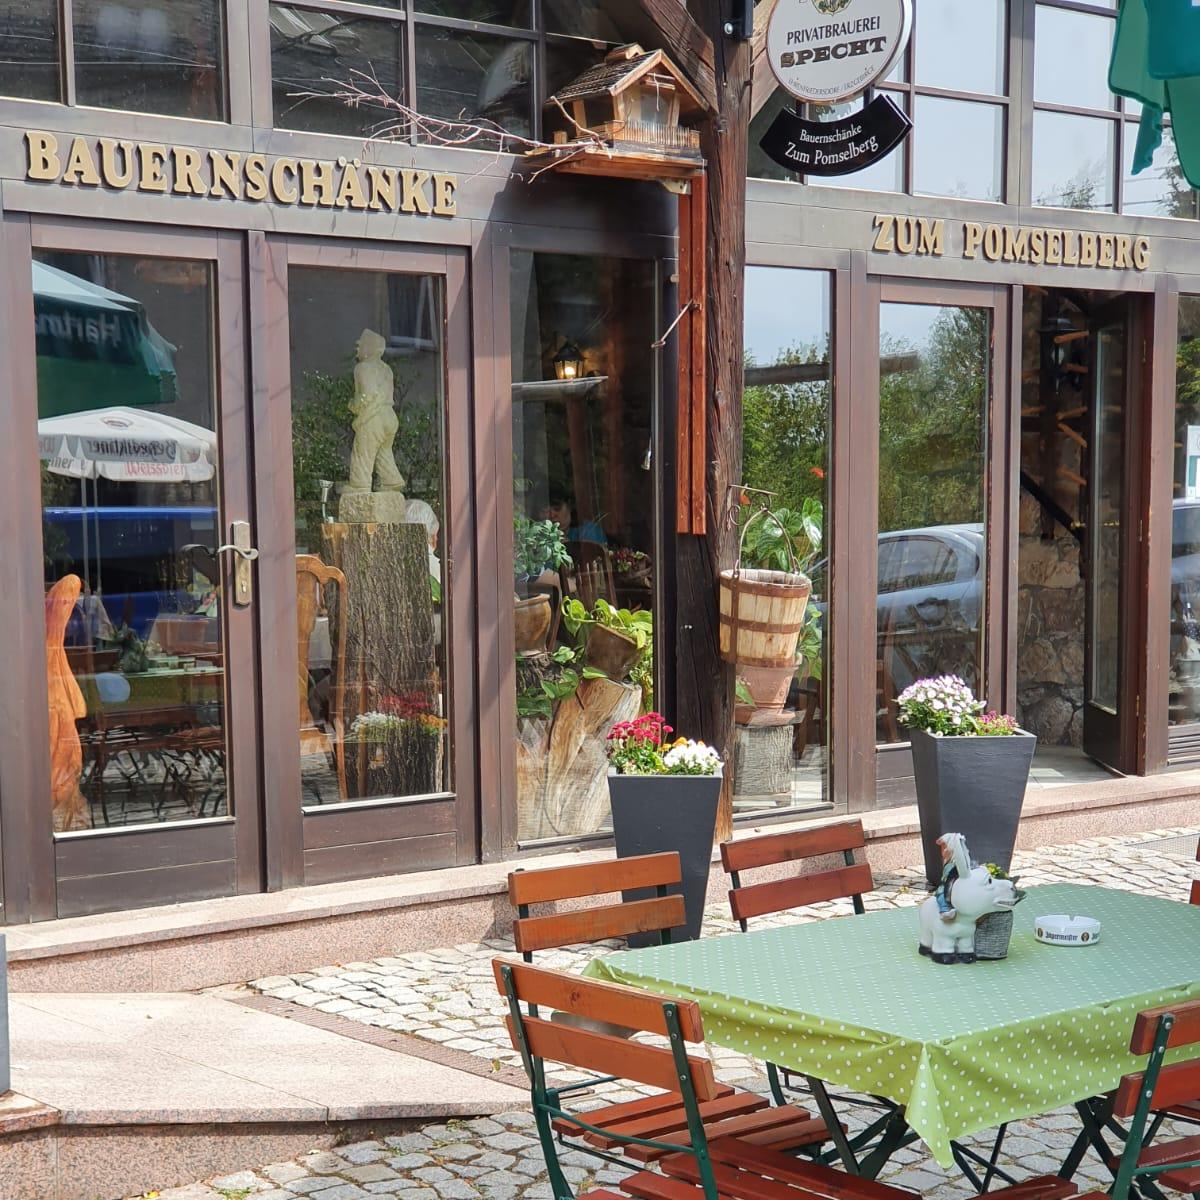 Restaurant "Bauernschänke zum Pomselberg" in Flöha